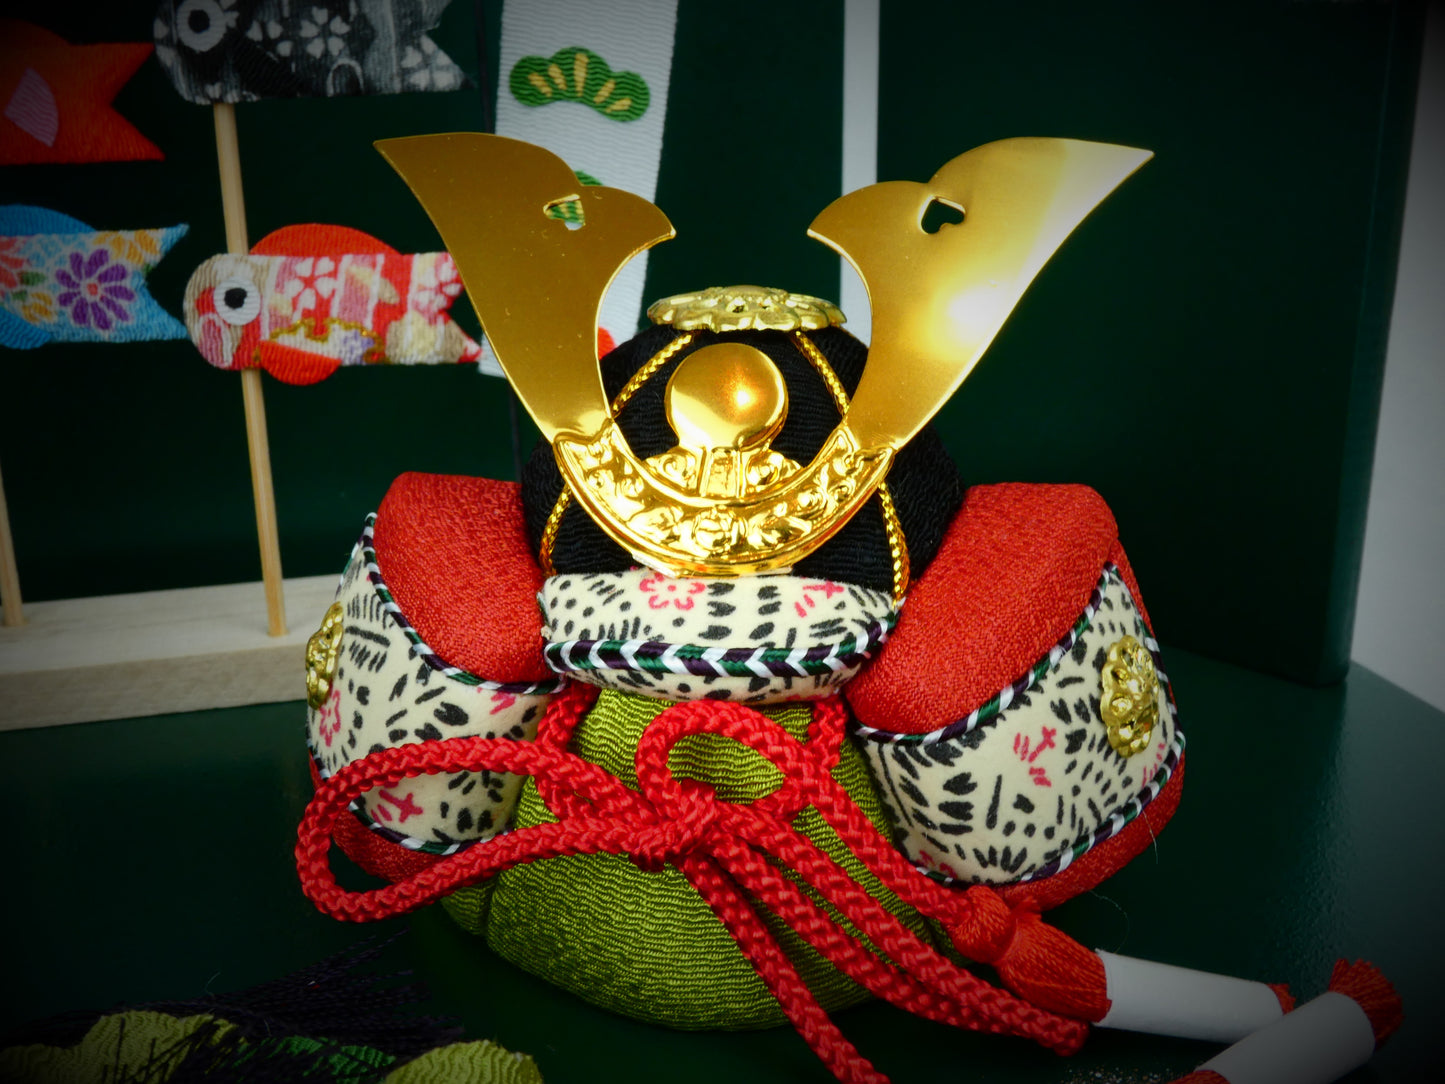 木目込み人形兜鯉のぼり飾り「新緑」54036